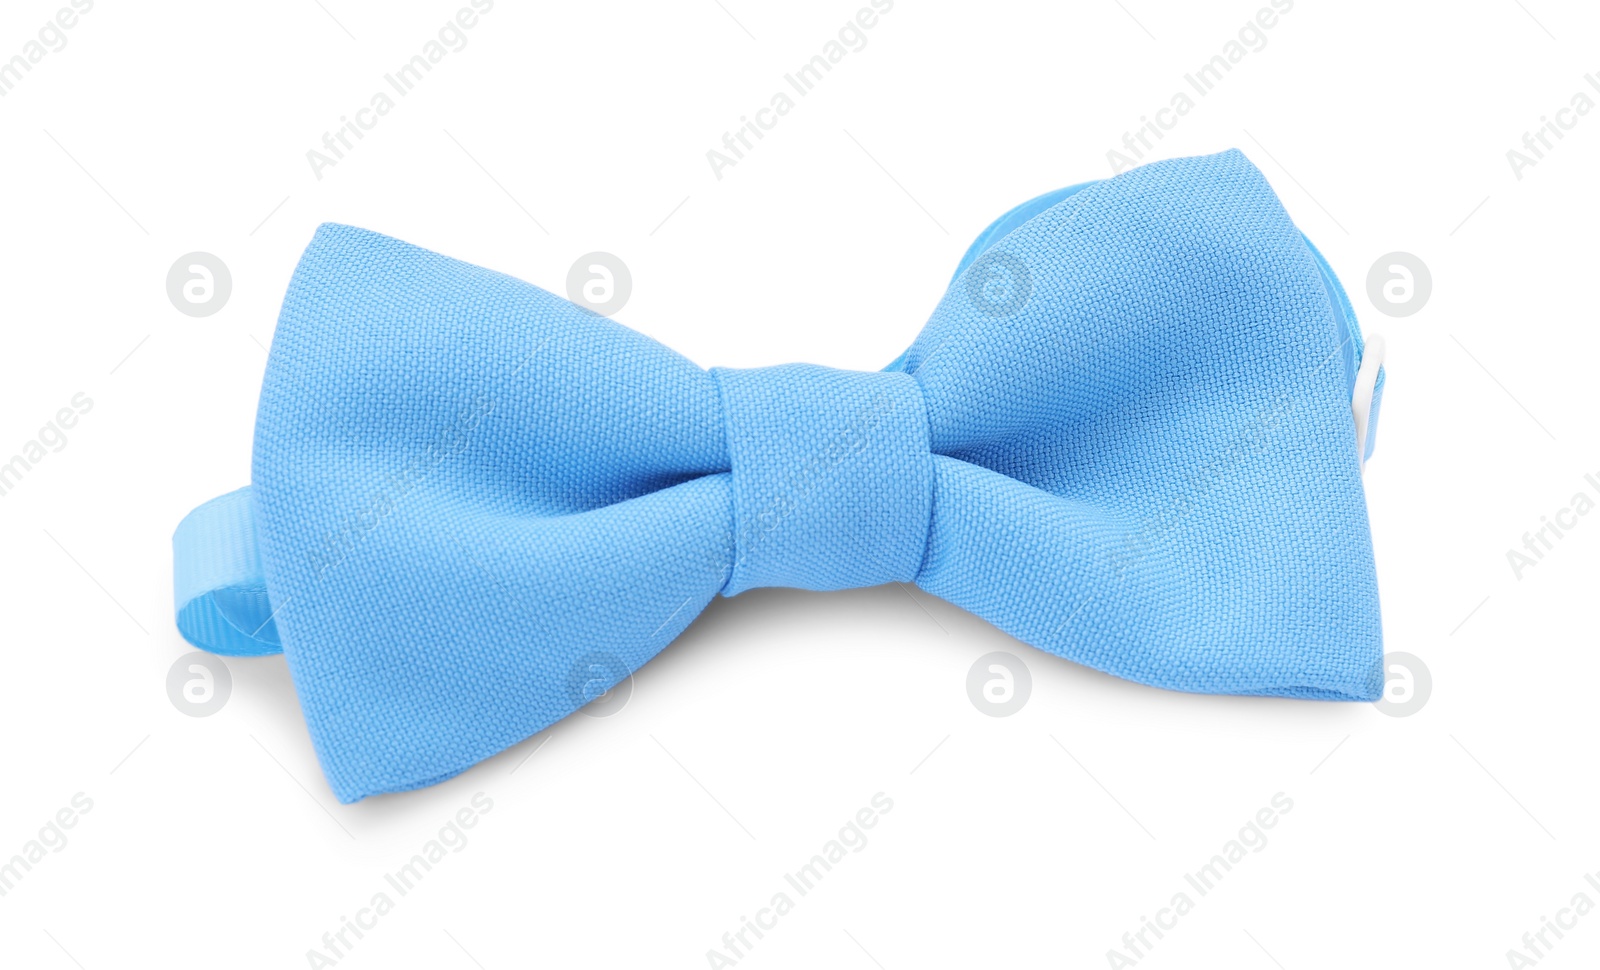 Photo of Stylish light blue bow tie on white background